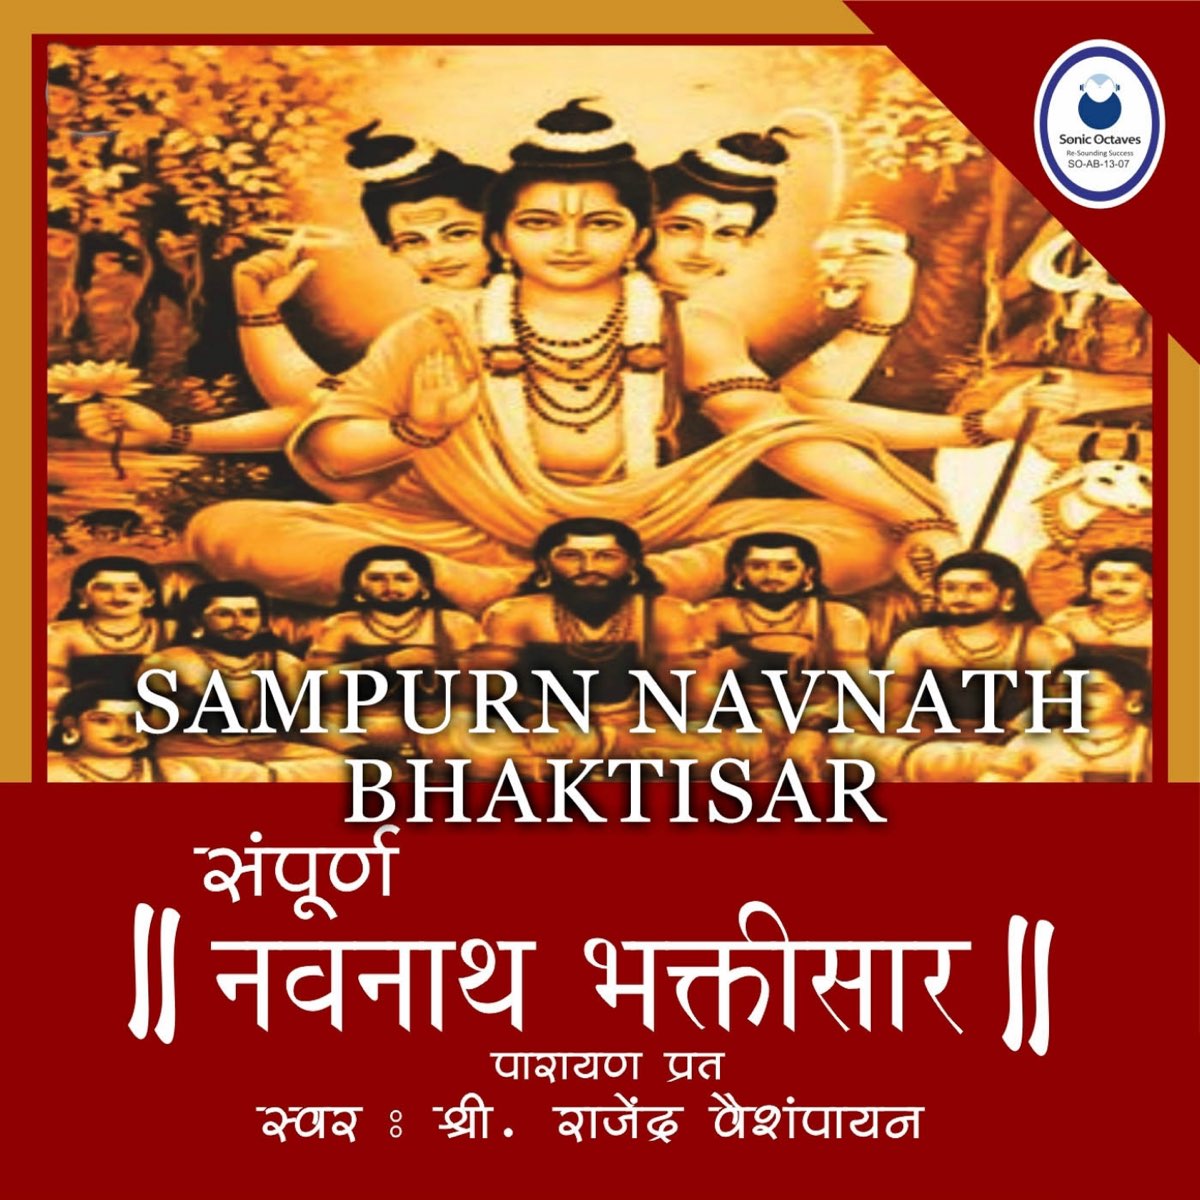 Sampurn Navnath Bhaktisar by Rajendra Vaishampayan on Apple Music